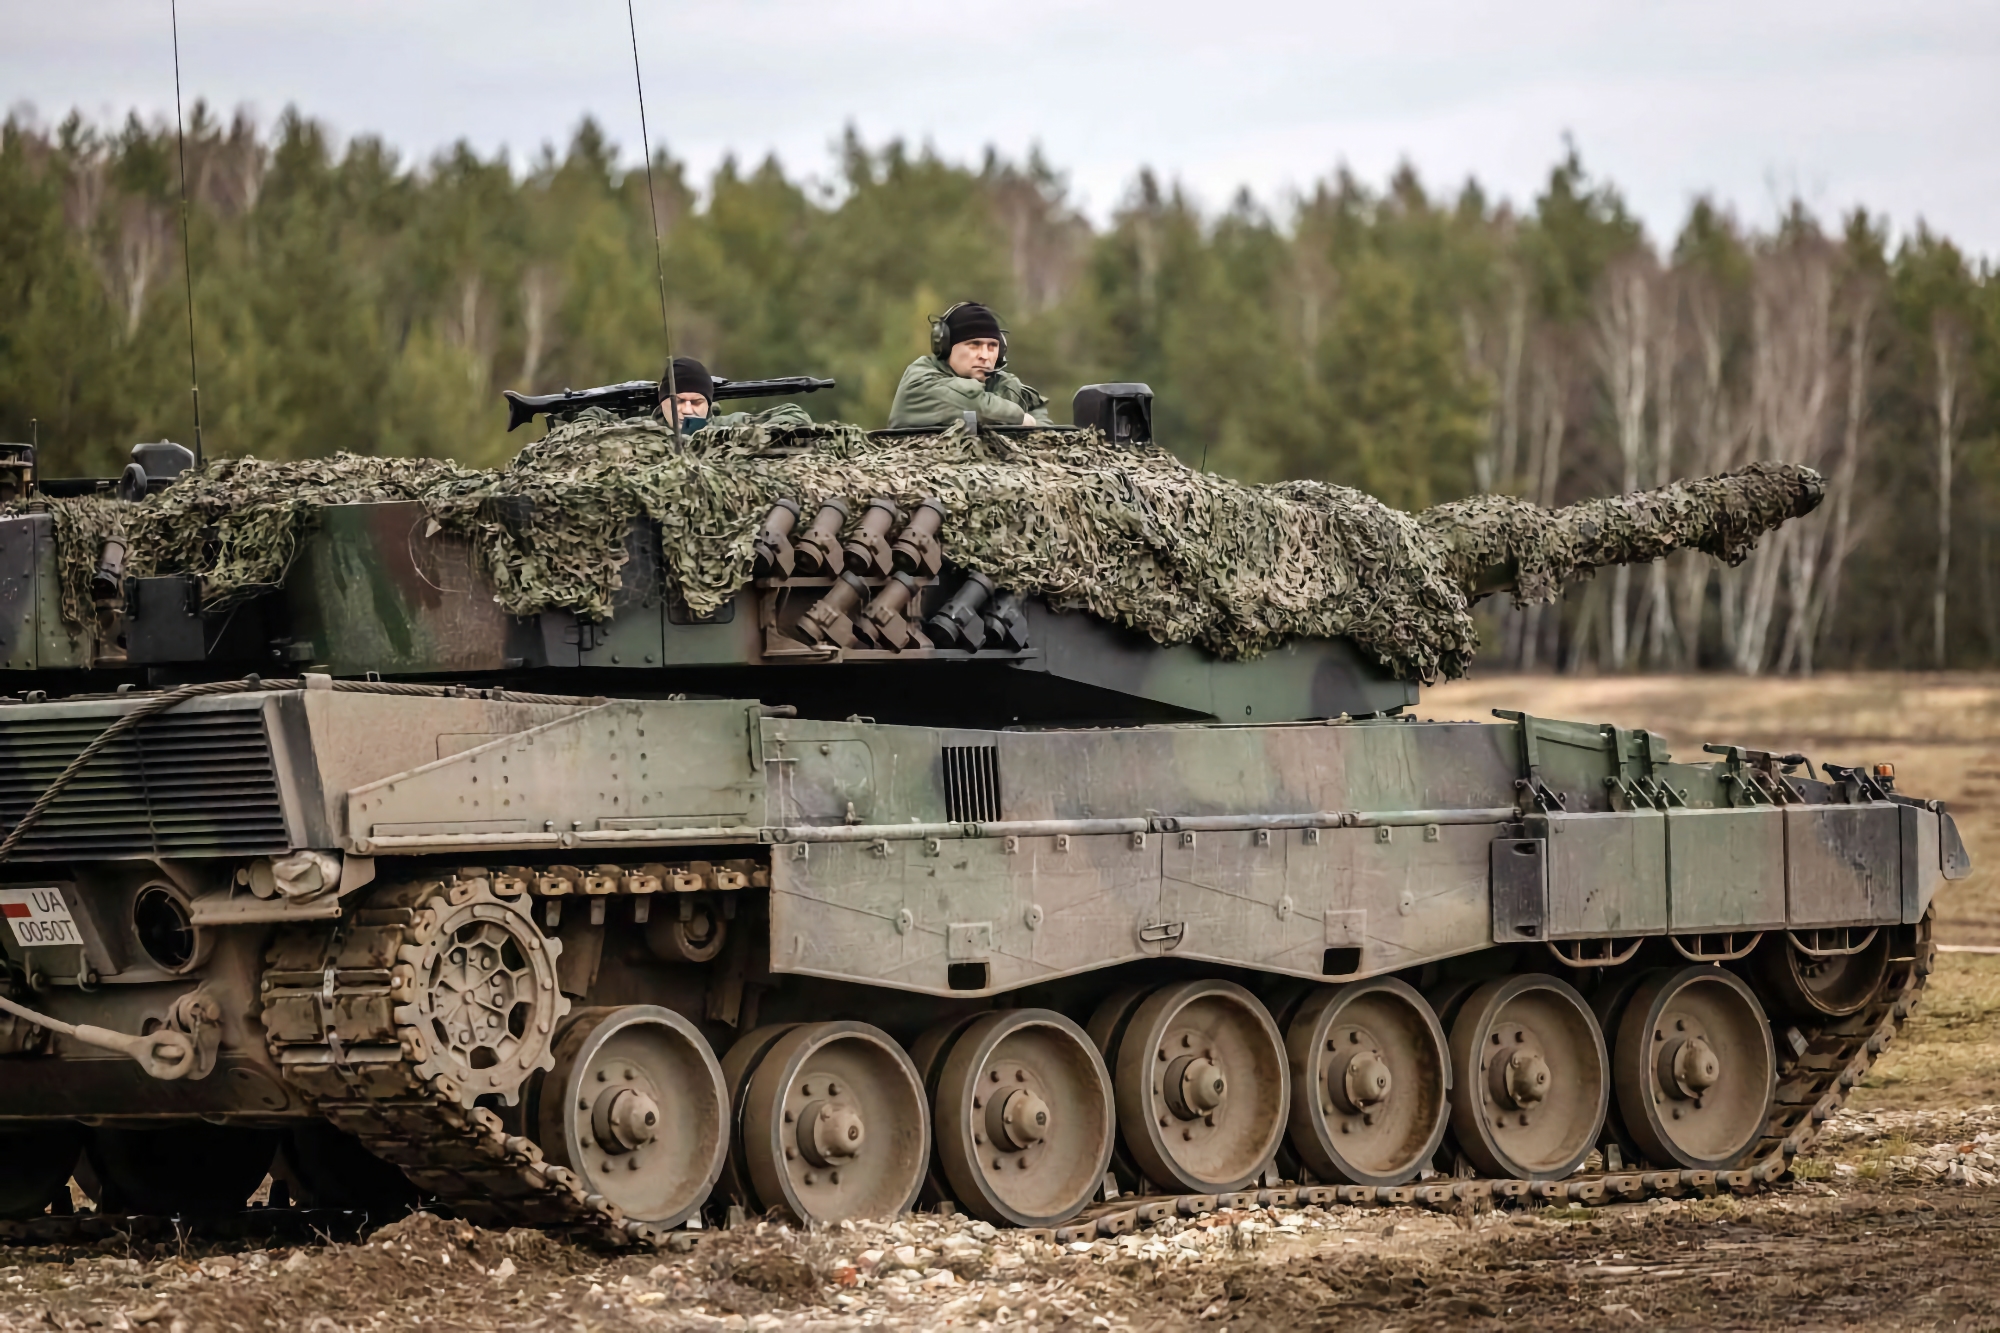 20 БТР M113, 4 танки Leopard 2 і польовий шпиталь Role 2 plus: Іспанія відправить Україні новий пакет військової допомоги